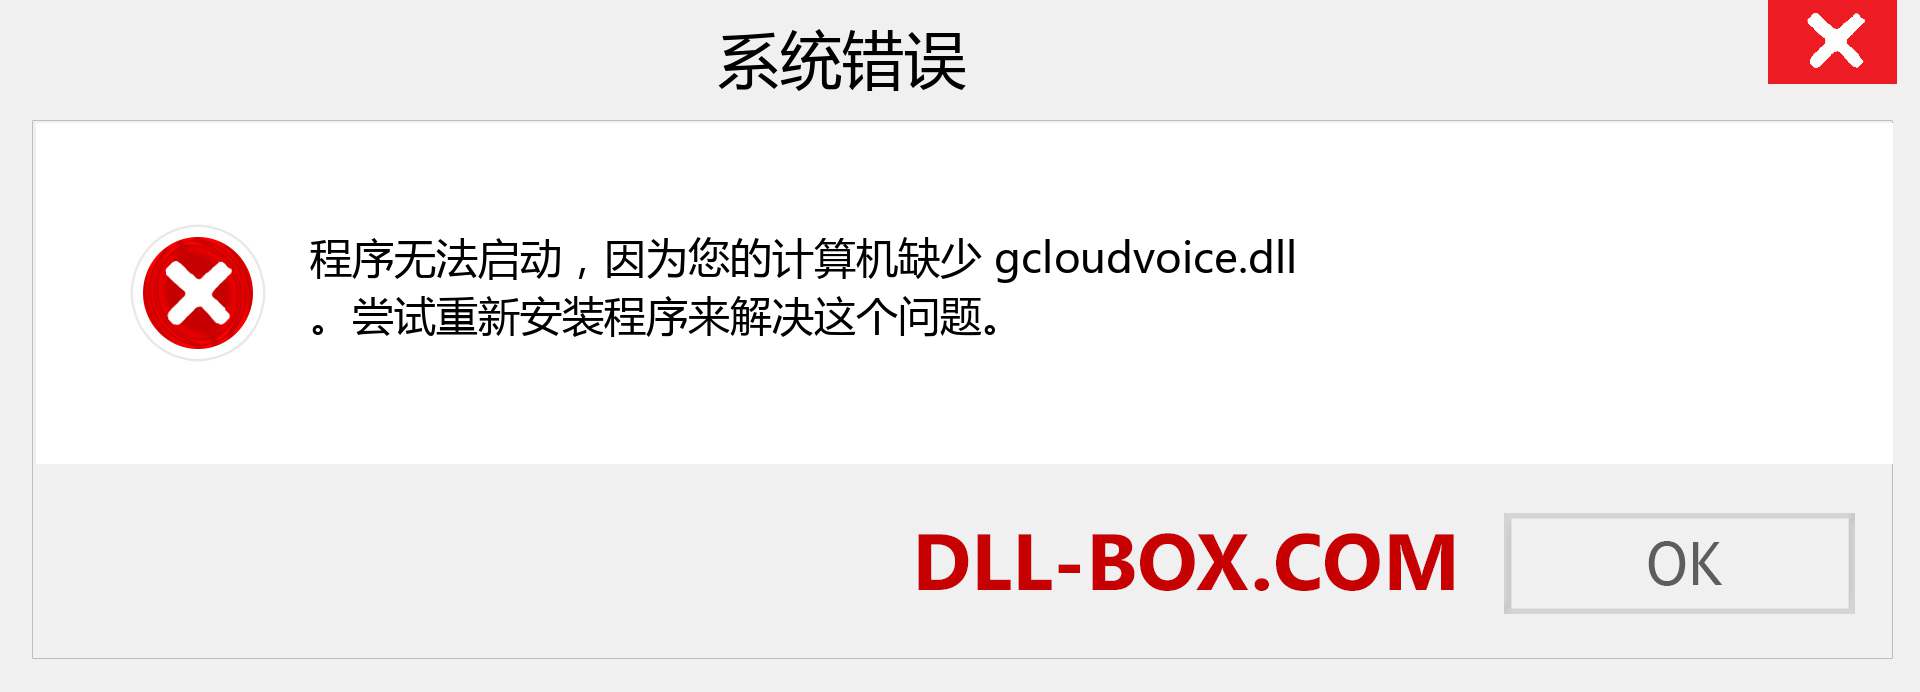 gcloudvoice.dll 文件丢失？。 适用于 Windows 7、8、10 的下载 - 修复 Windows、照片、图像上的 gcloudvoice dll 丢失错误